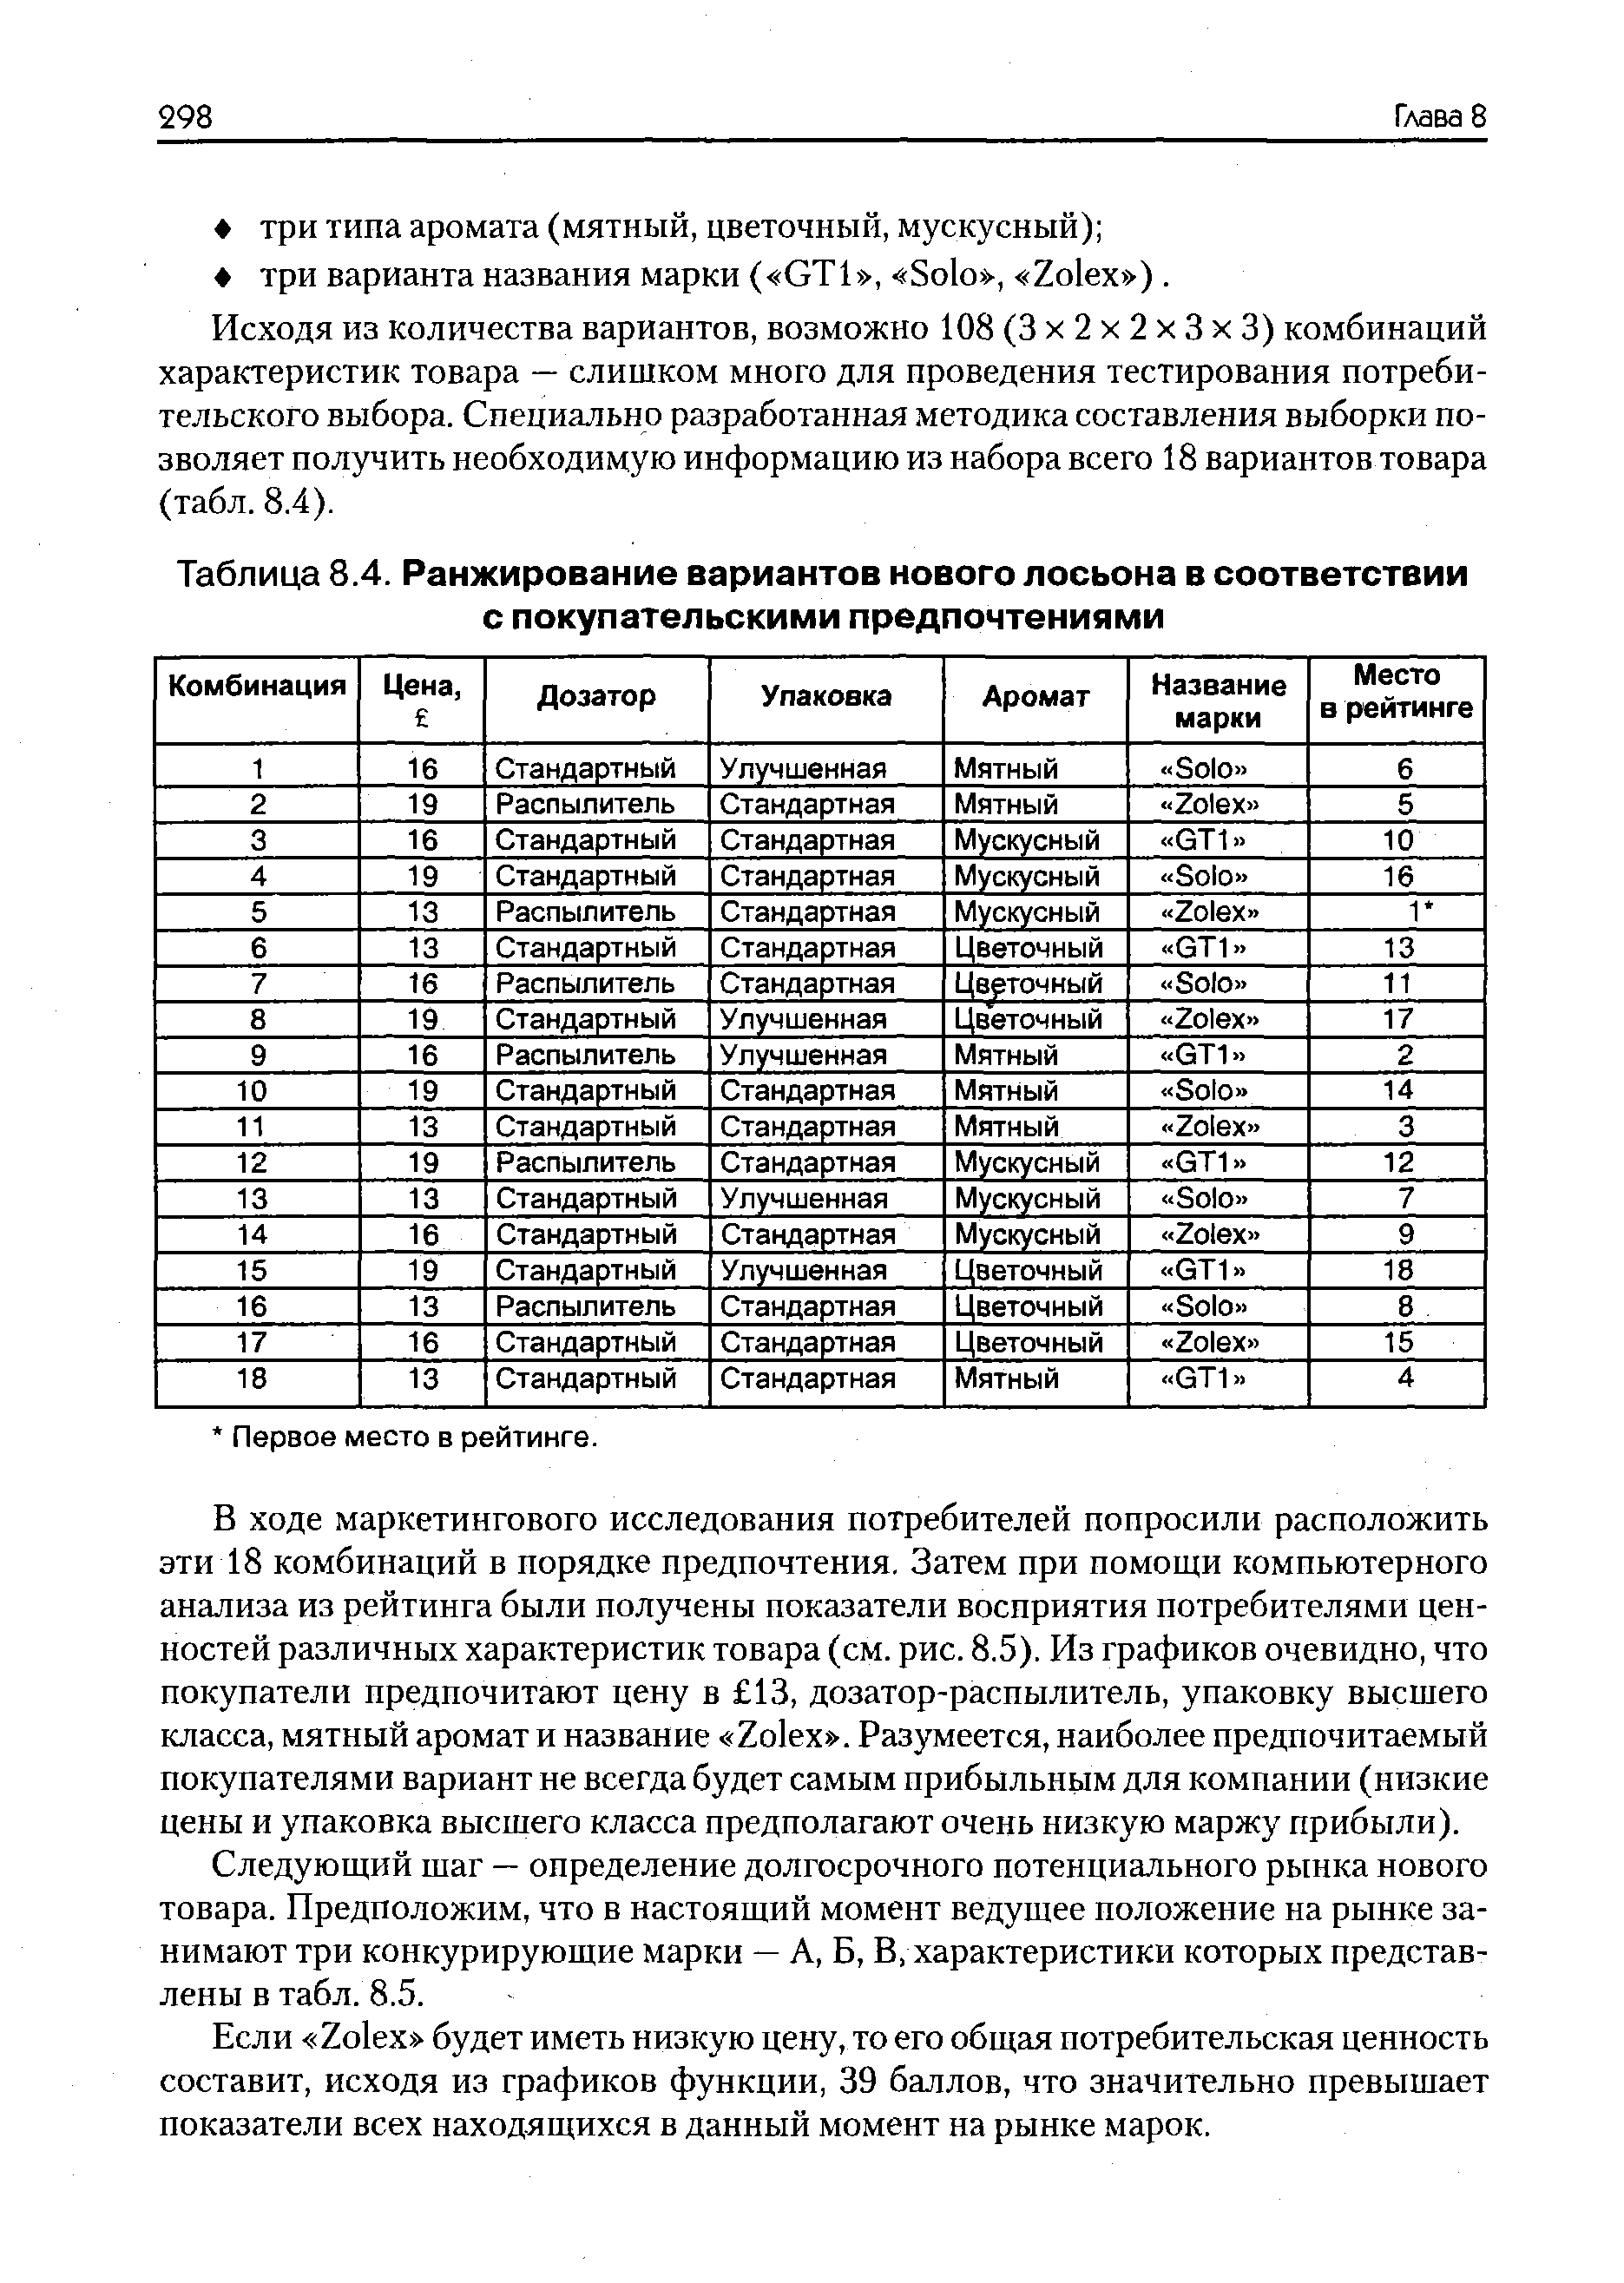 Таблица 8.4. Ранжирование вариантов нового лосьона в соответствии с покупательскими предпочтениями
